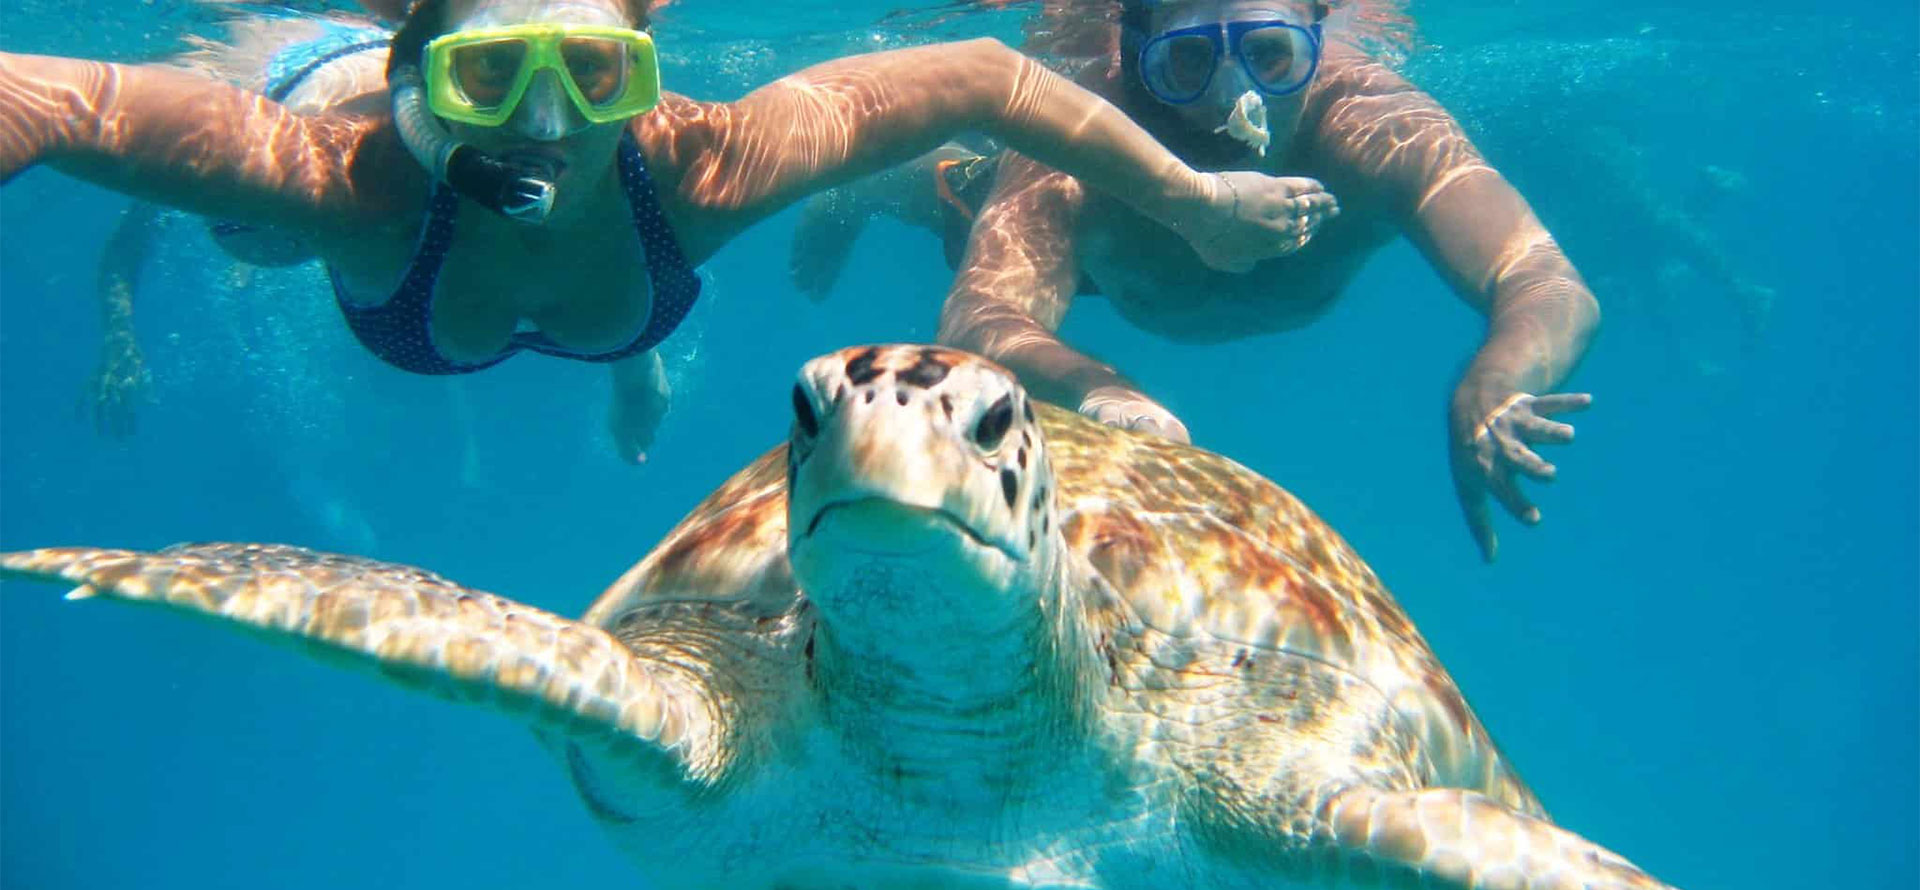 Barbados honeymoon ocean with turtles.